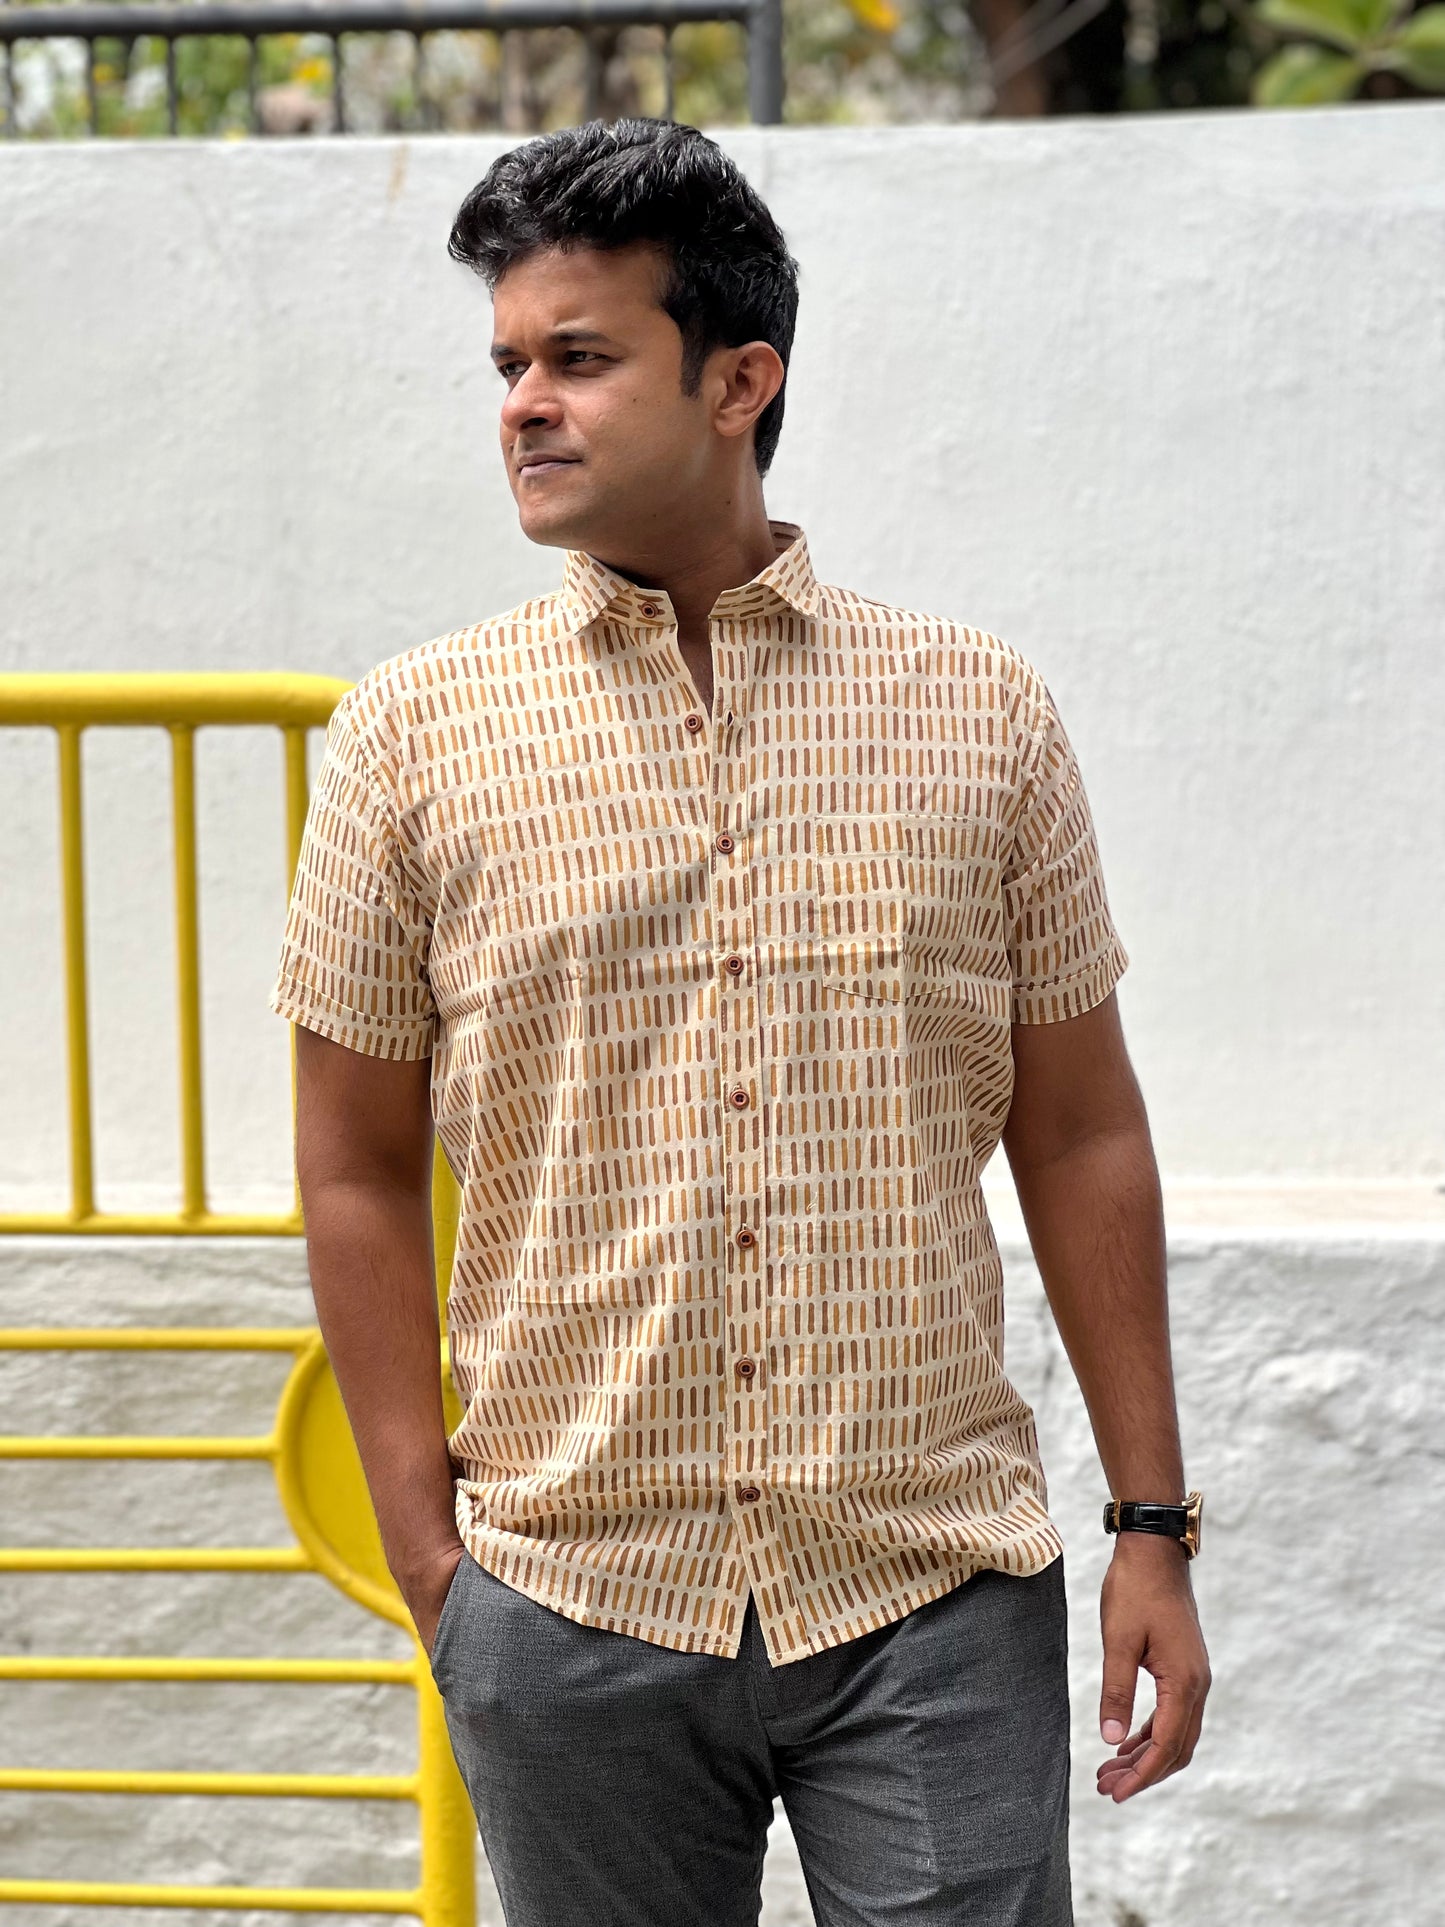 Southloom Jaipur Cotton Beige Hand Block Printed Shirt (Half Sleeves)